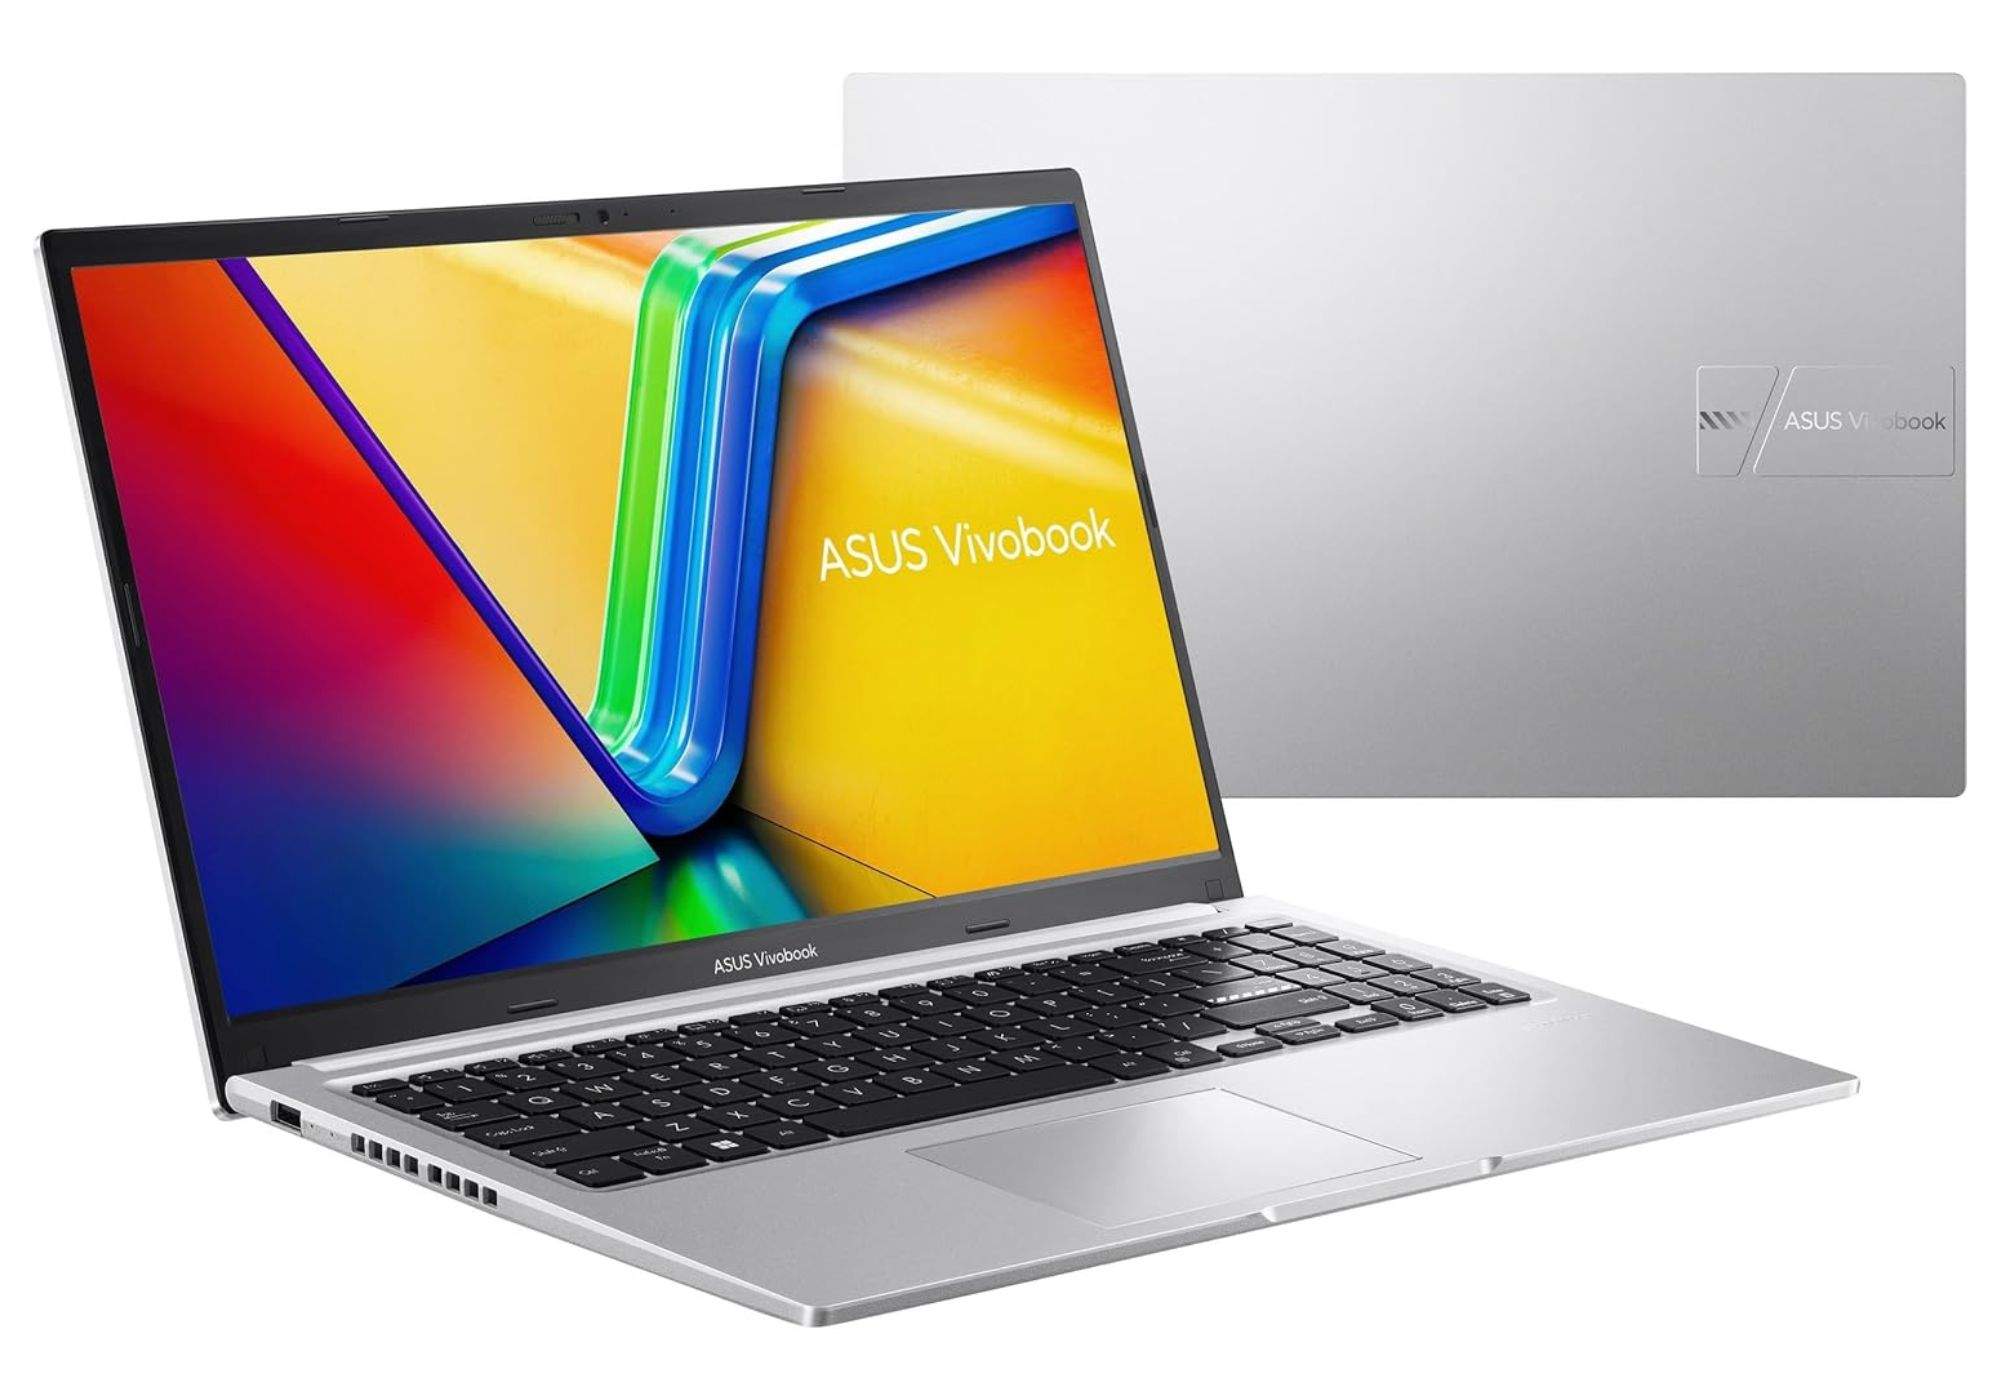 La ganga del dia! La millor oferta qualitat-preu a PC Portàtil, aquest ASUS VivoBook 15, a Amazon